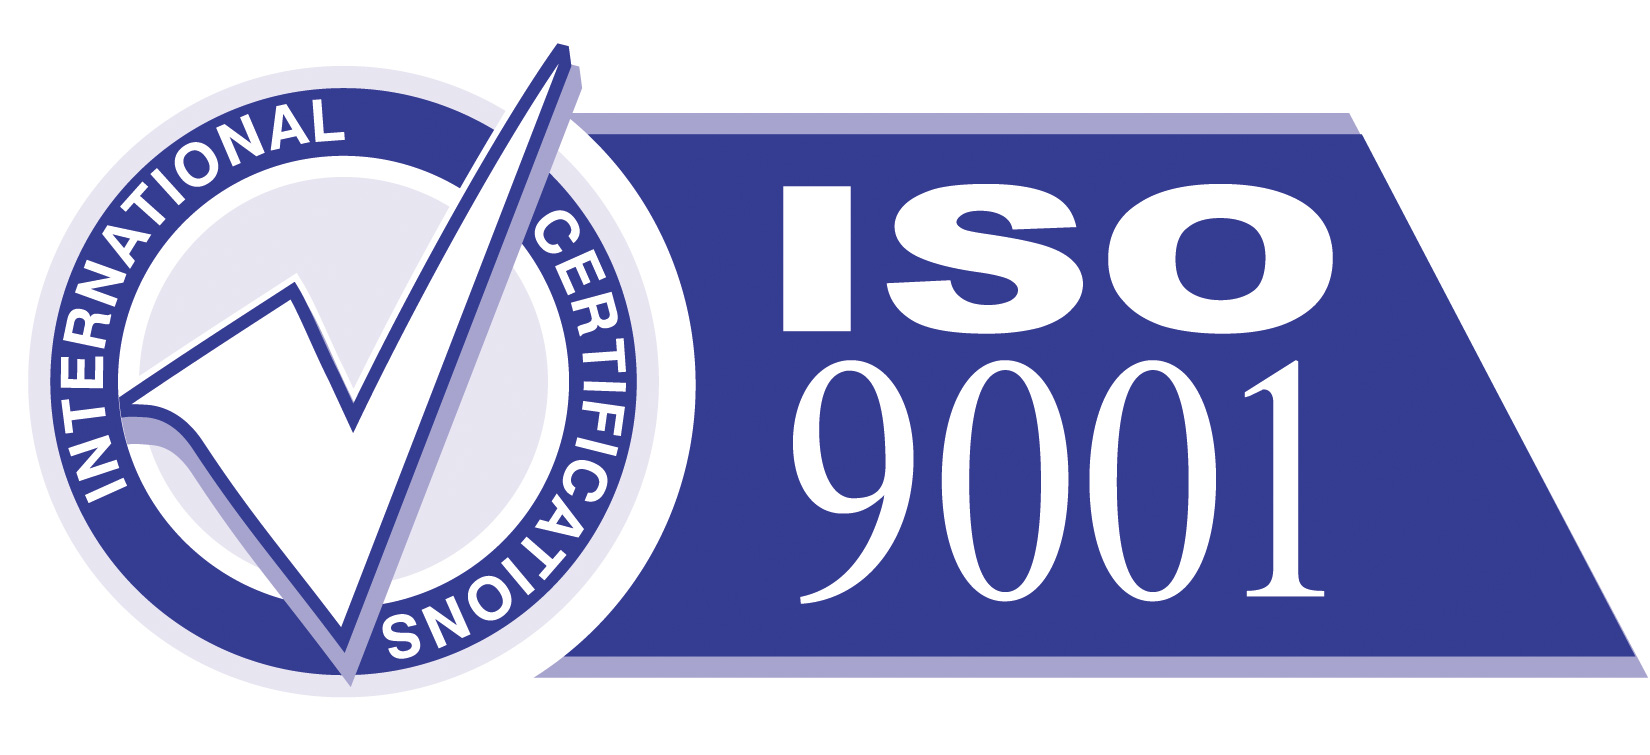 顺德ISO认证 顺德ISO认证公司 顺德ISO认证咨询 顺德ISO认证培训 顺德ISO认证辅导